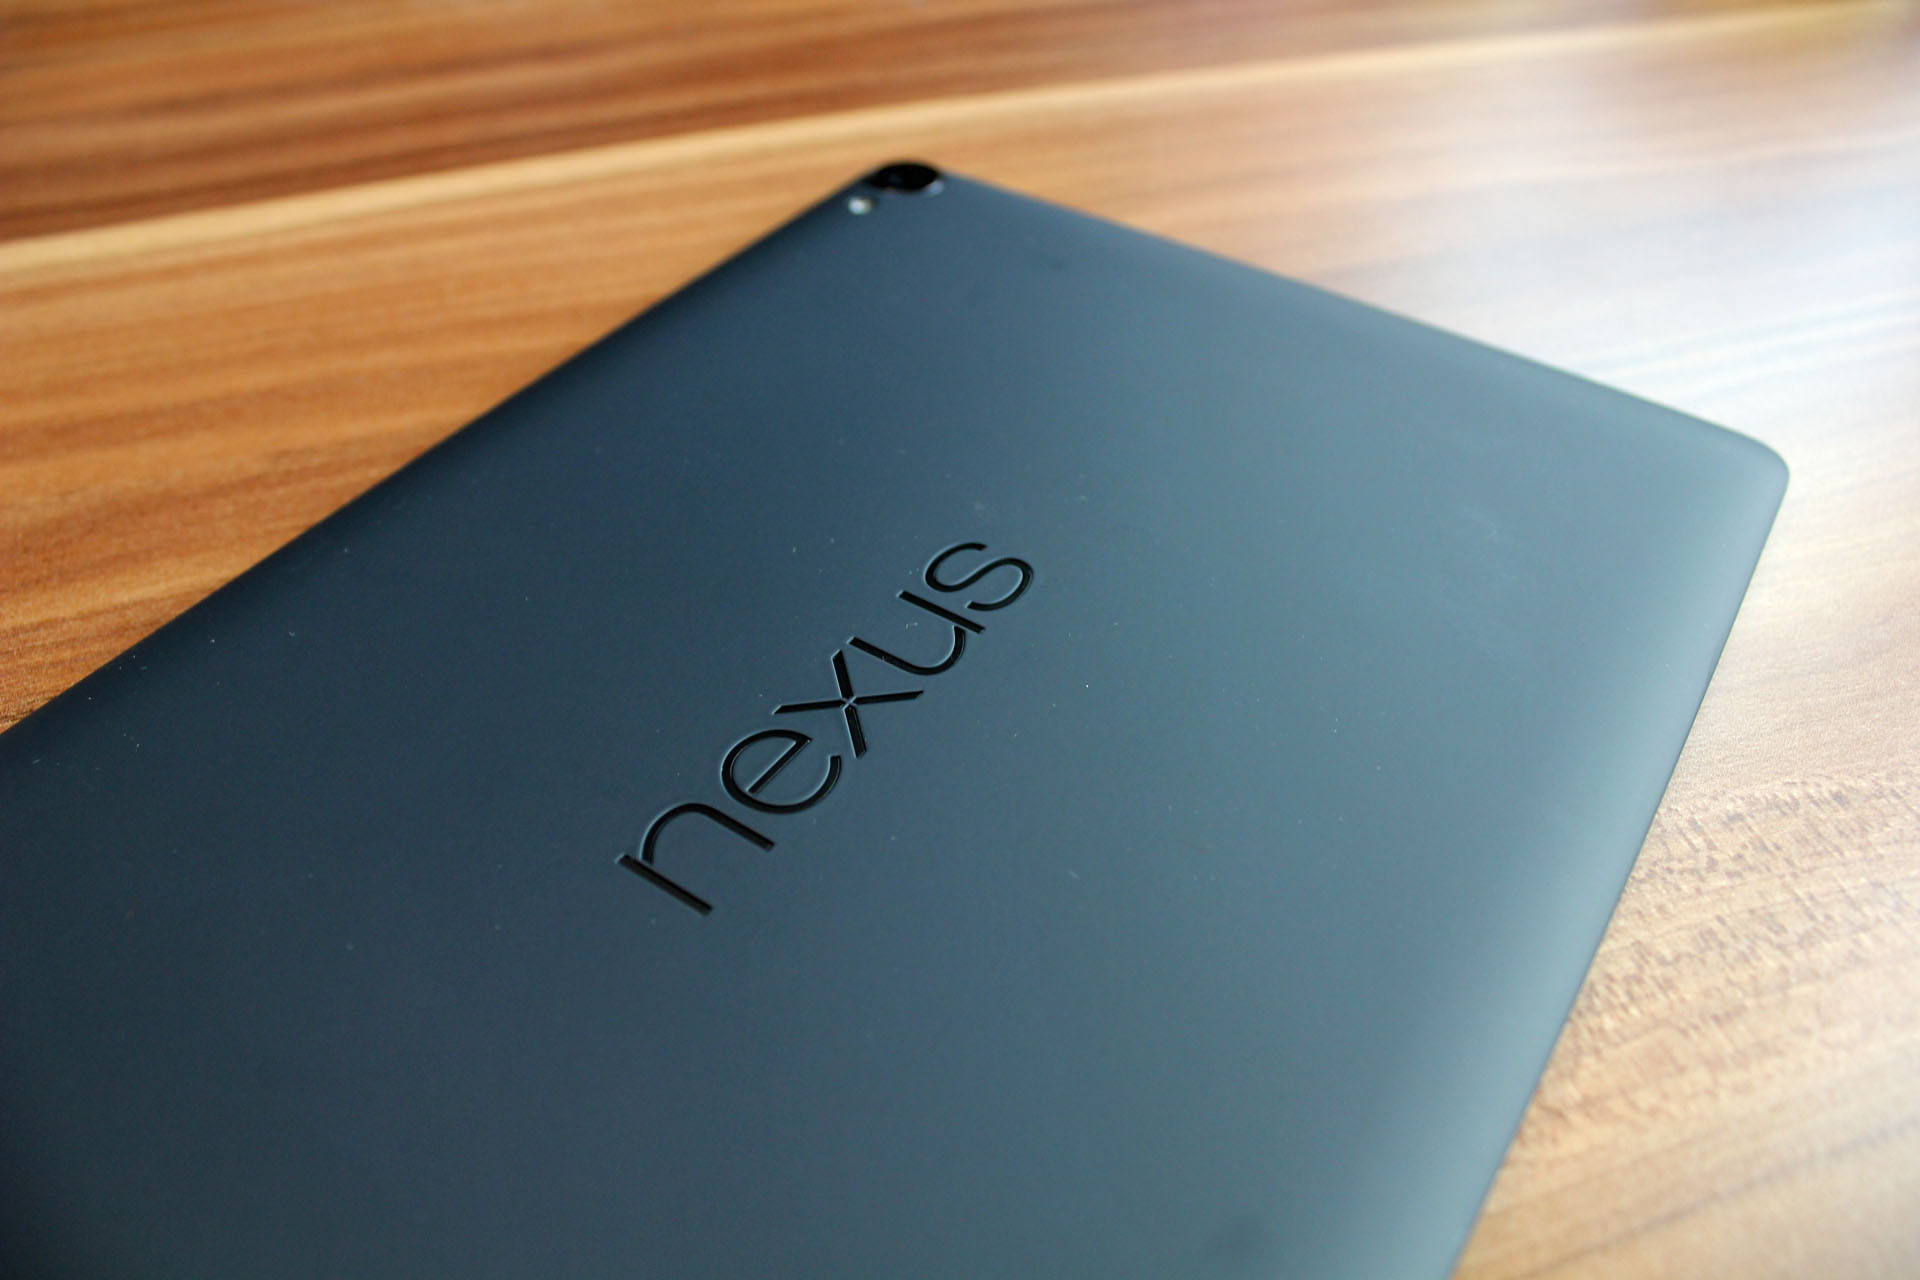 Nexus 9 - Body